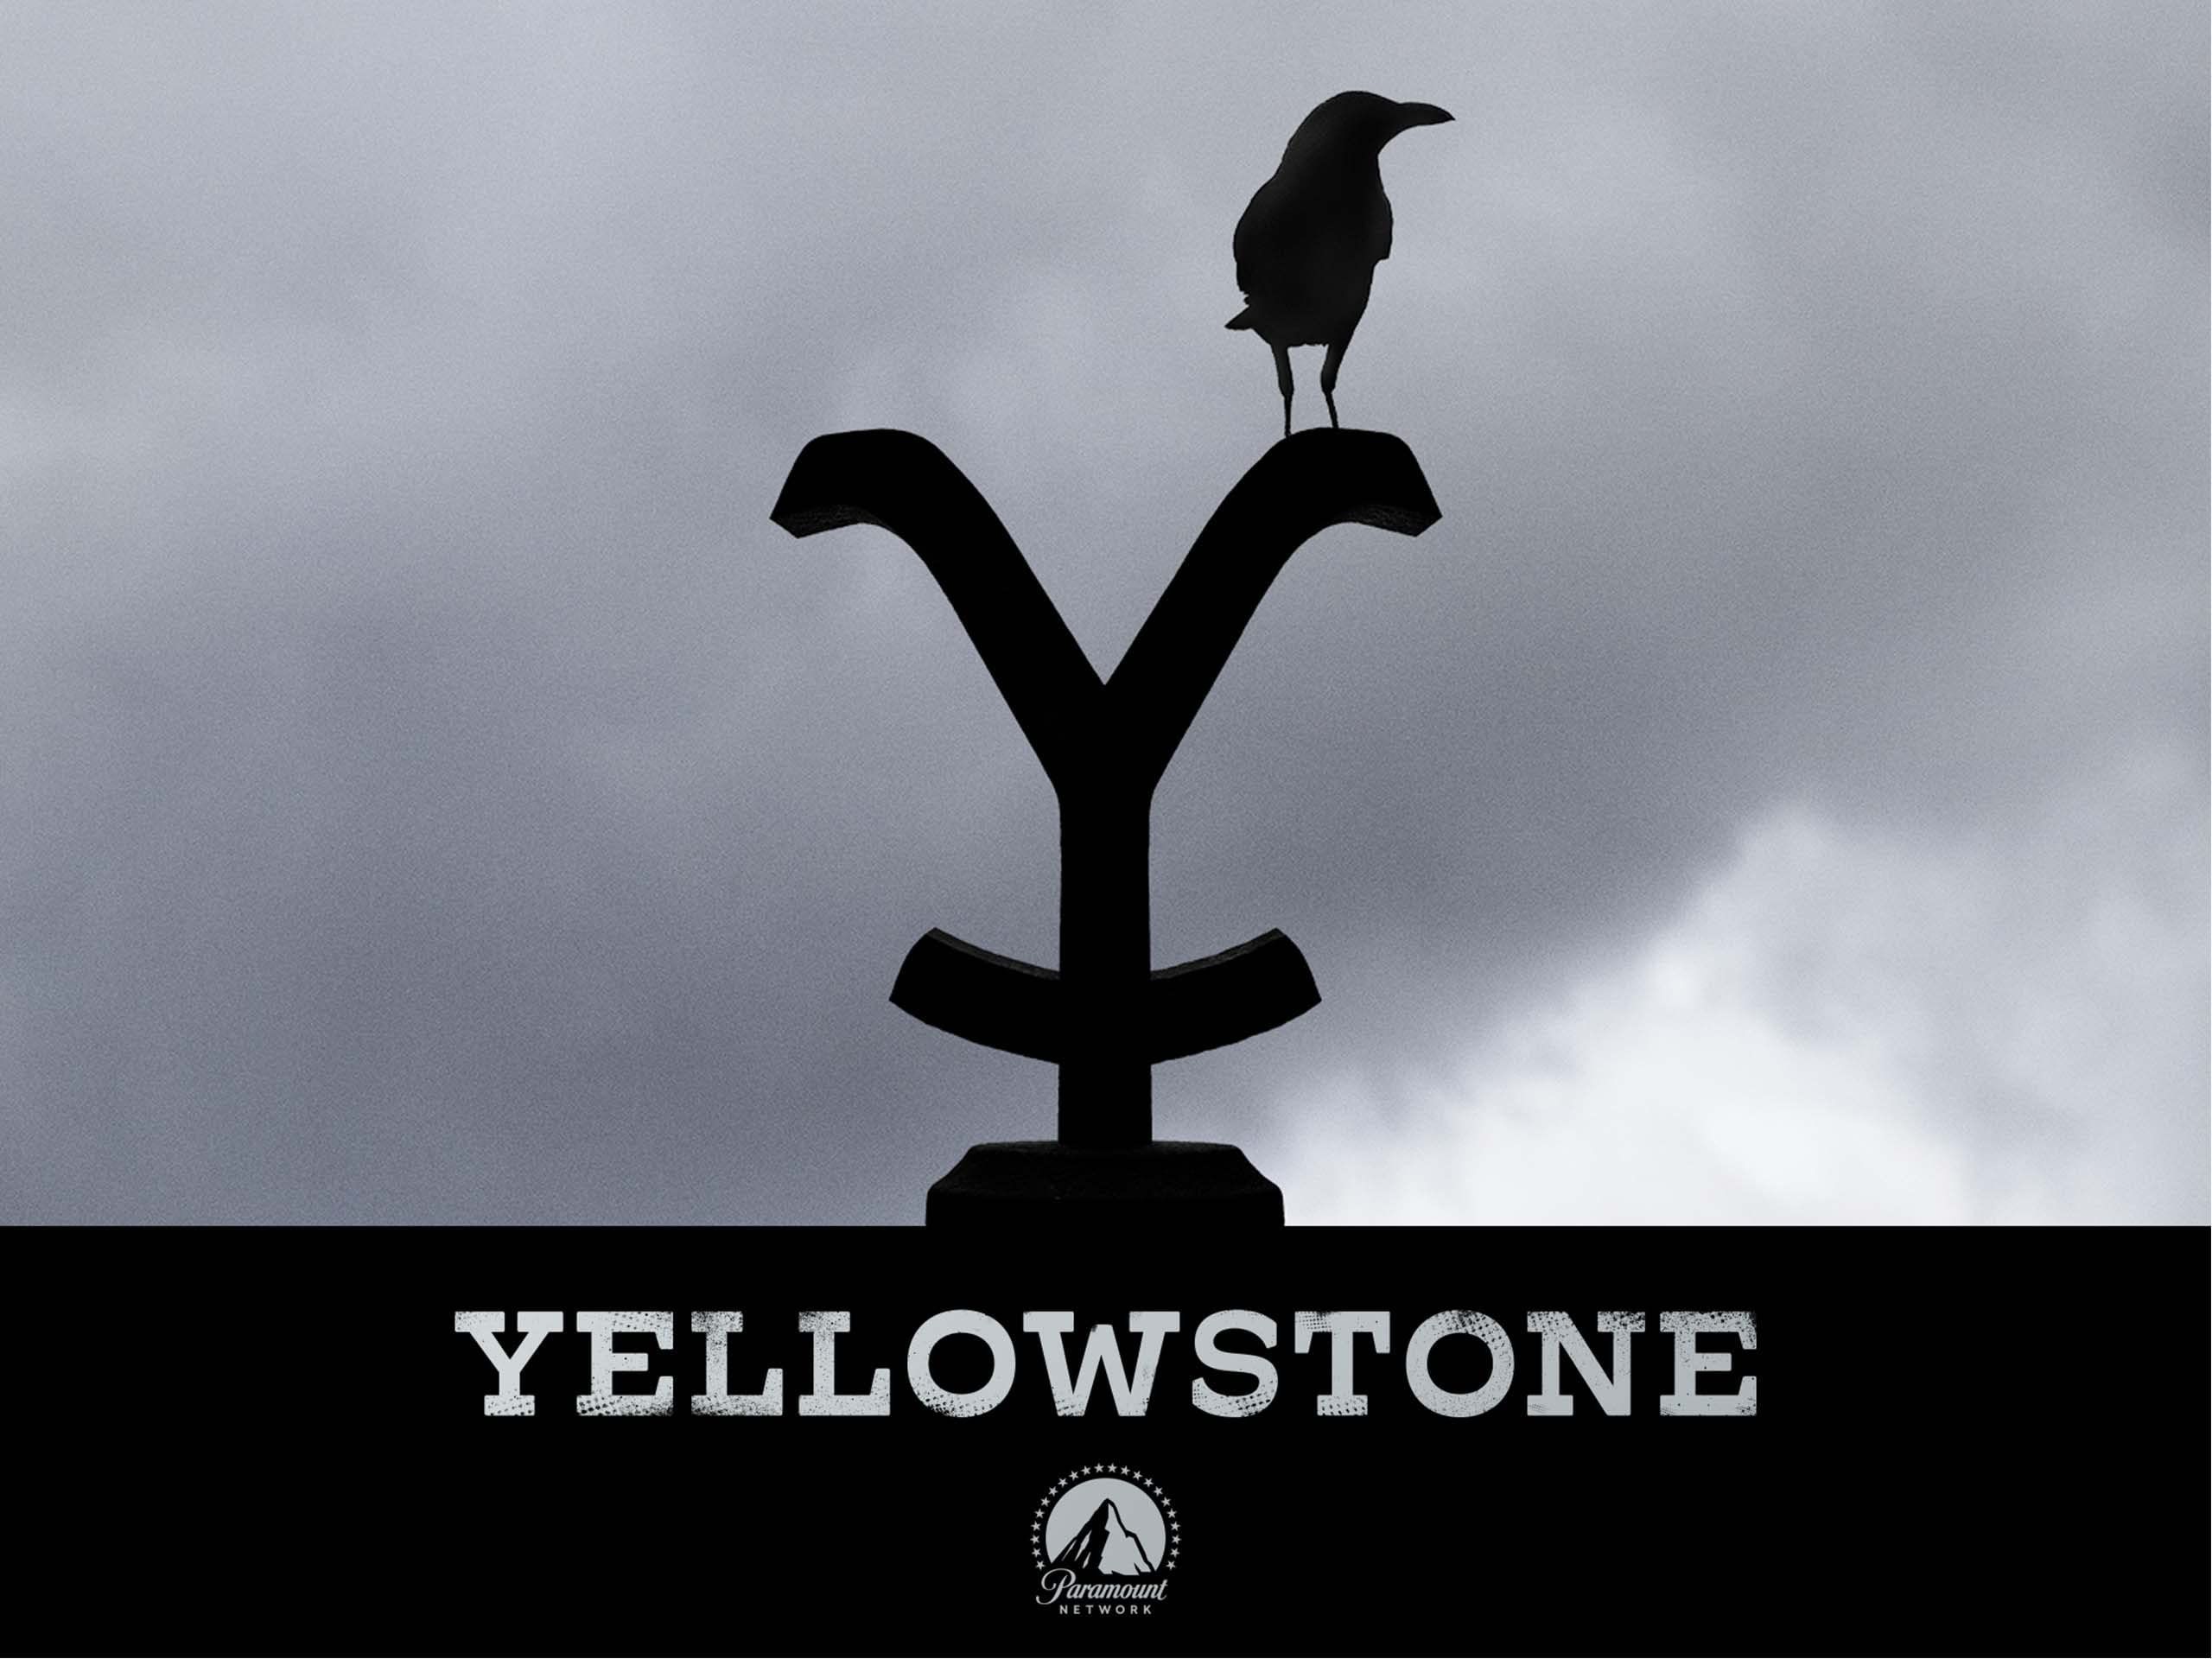 'Yellowstone' on Amazon Prime Video